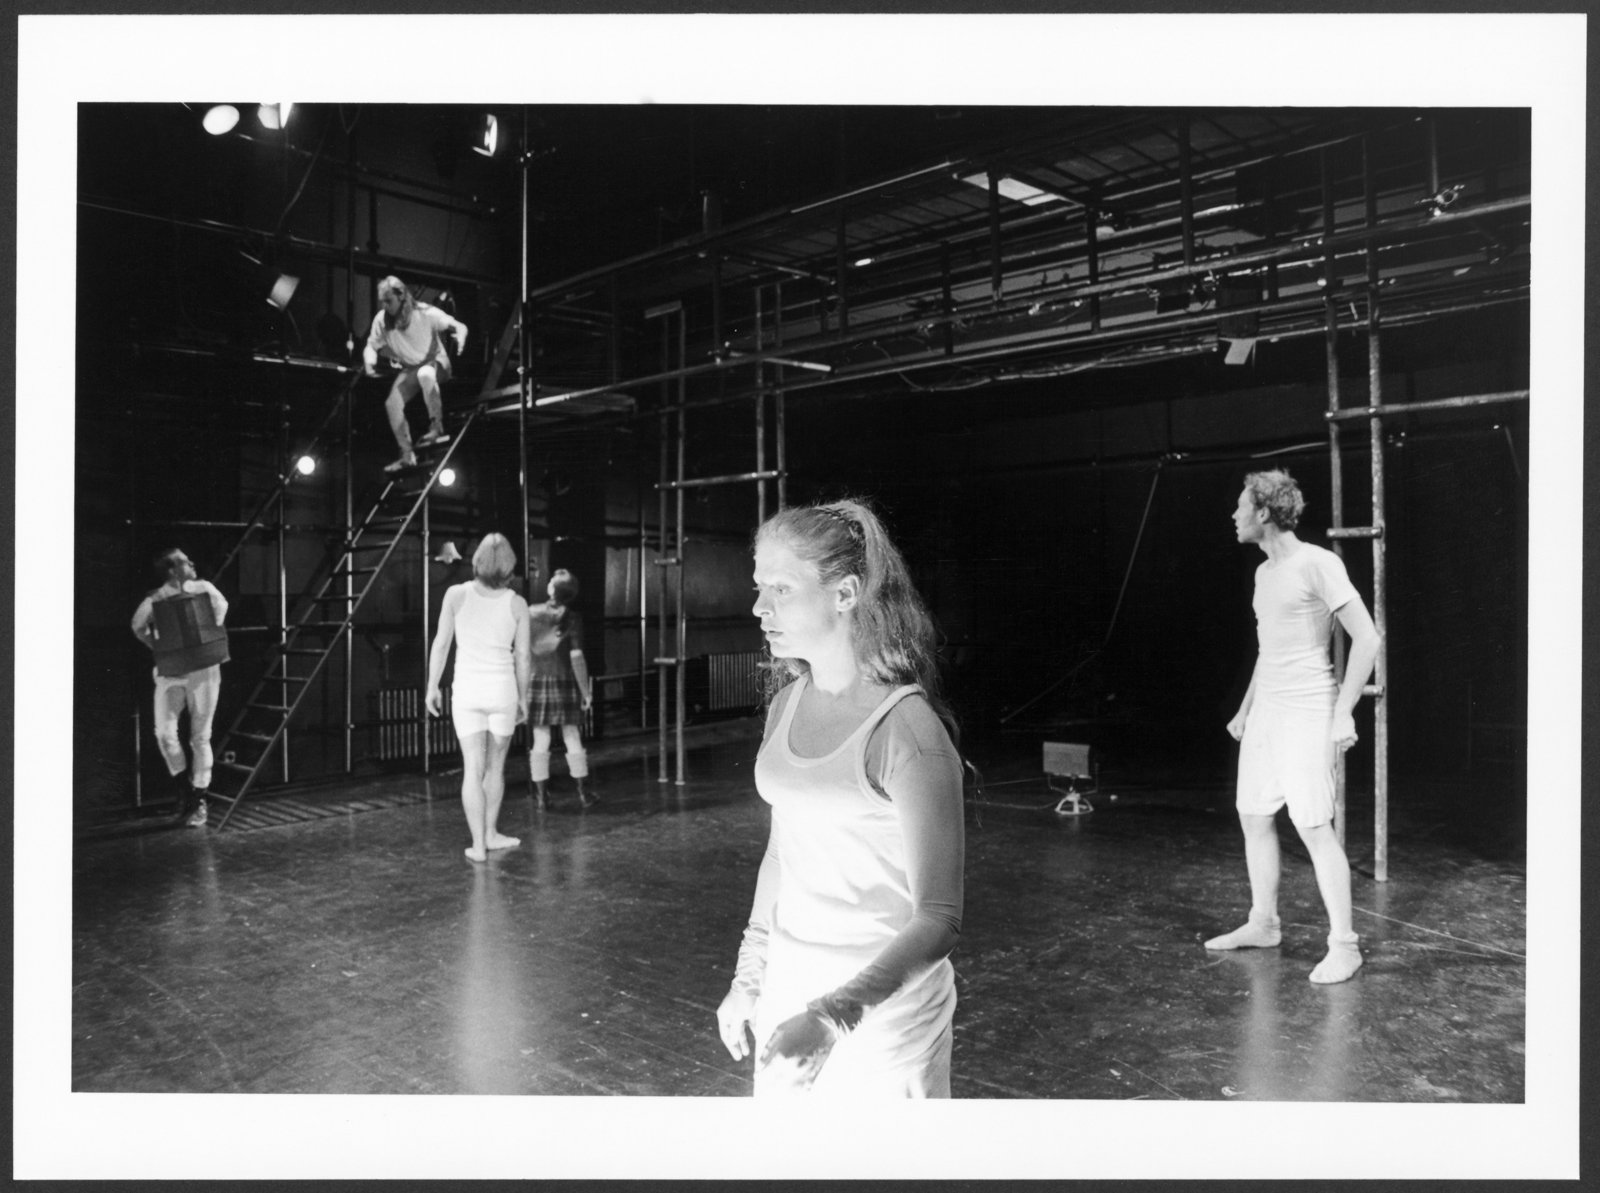 Bild der Studioinszenierung "Macbeth" an der Hochschule für Schauspielkunst Ernst Busch (Hochschule für Schauspielkunst Ernst Busch Berlin RR-F)